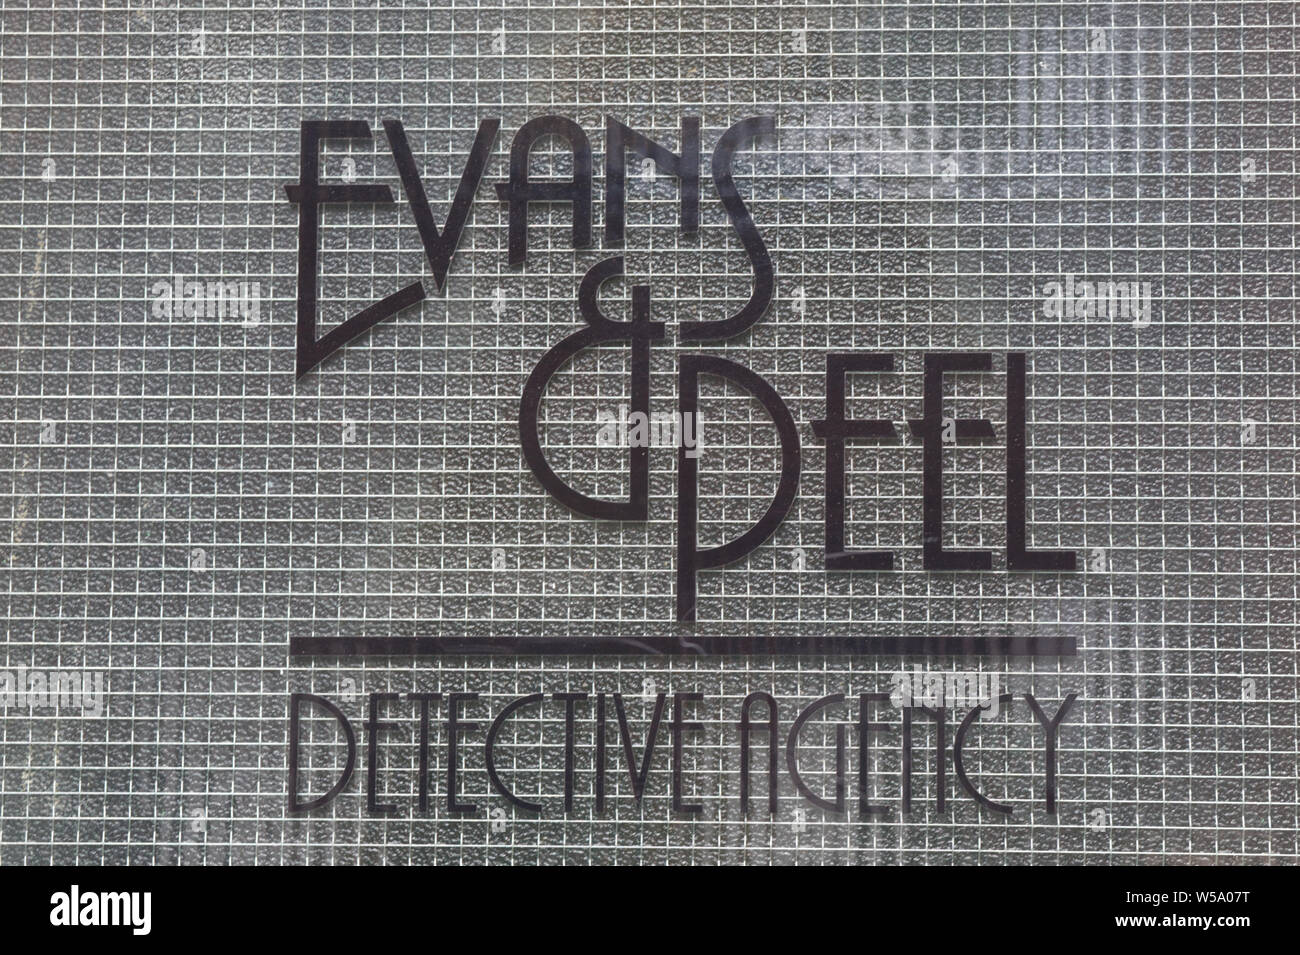 Evans and Peel Detective agency front door Stock Photo